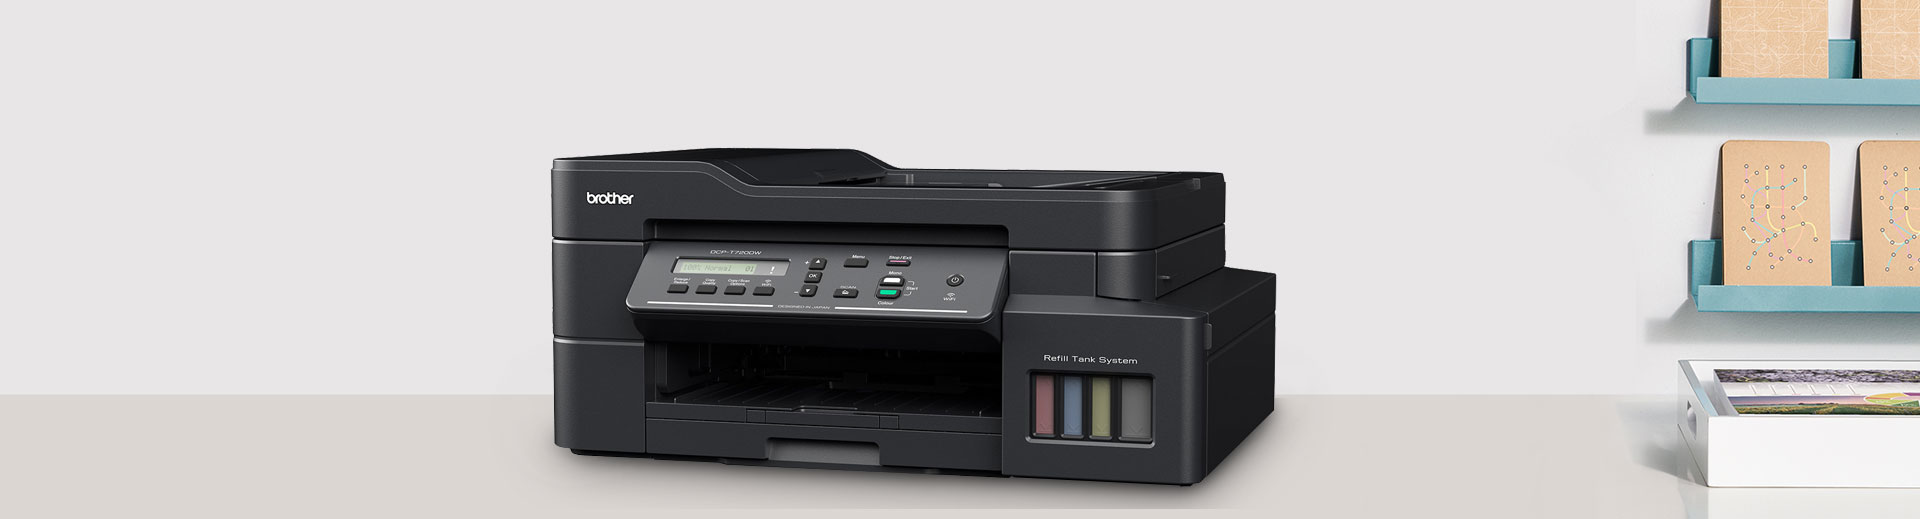 ข้อ 51. เครื่องพิมพ์ Multifunction แบบฉีดหมึกพร้อมติดตั้งถังหมึกพิมพ์ (Ink Tank Printer) ราคา 8,000 บาท